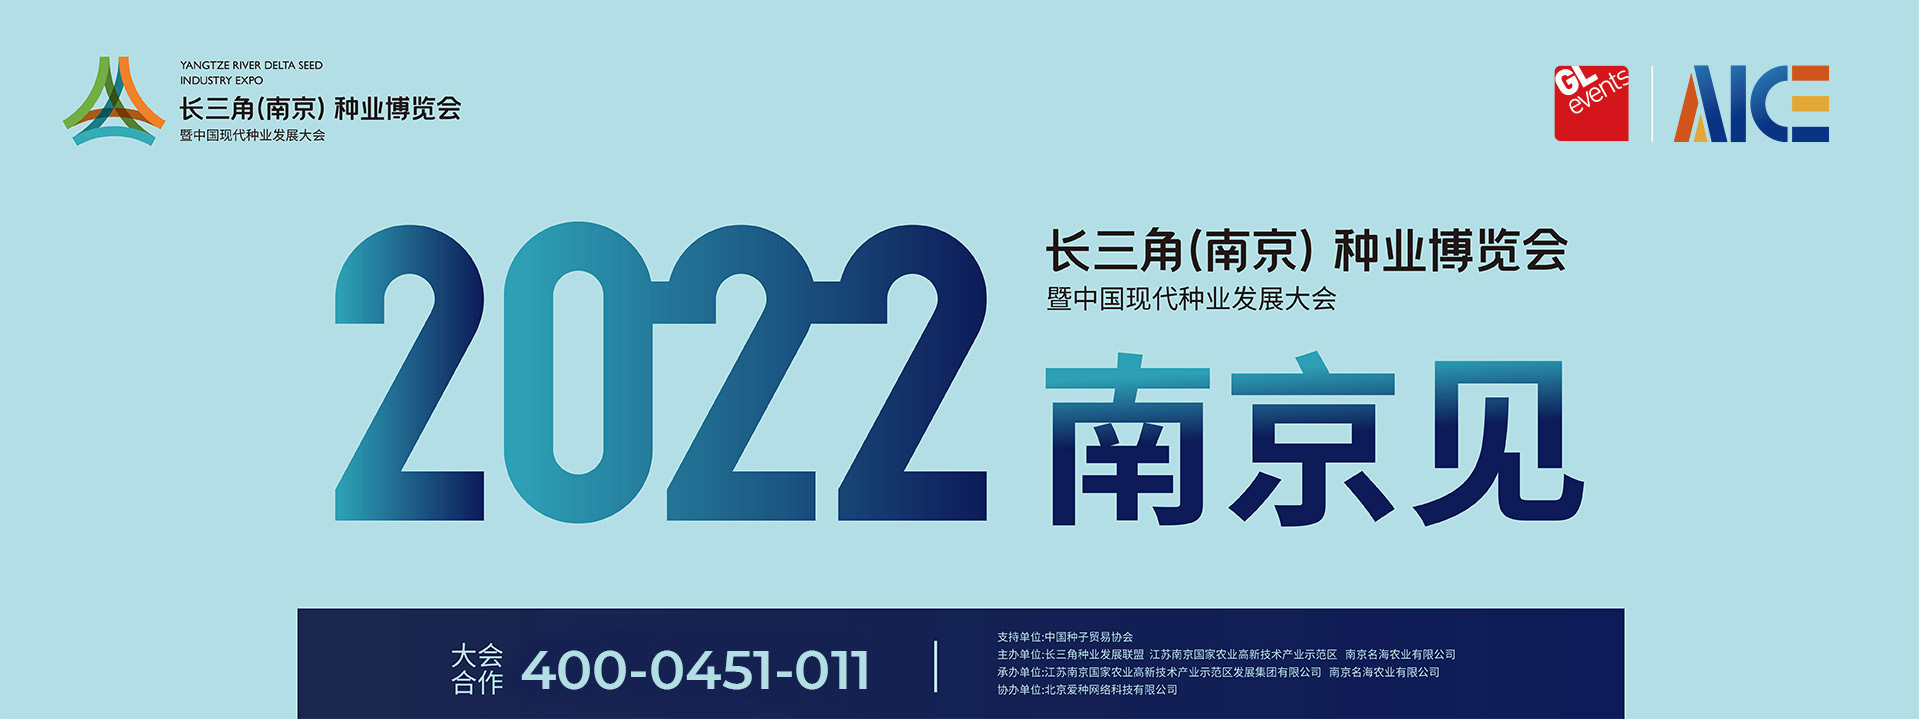 2022中国现代种业发展大会暨第二届长三角种业博览会